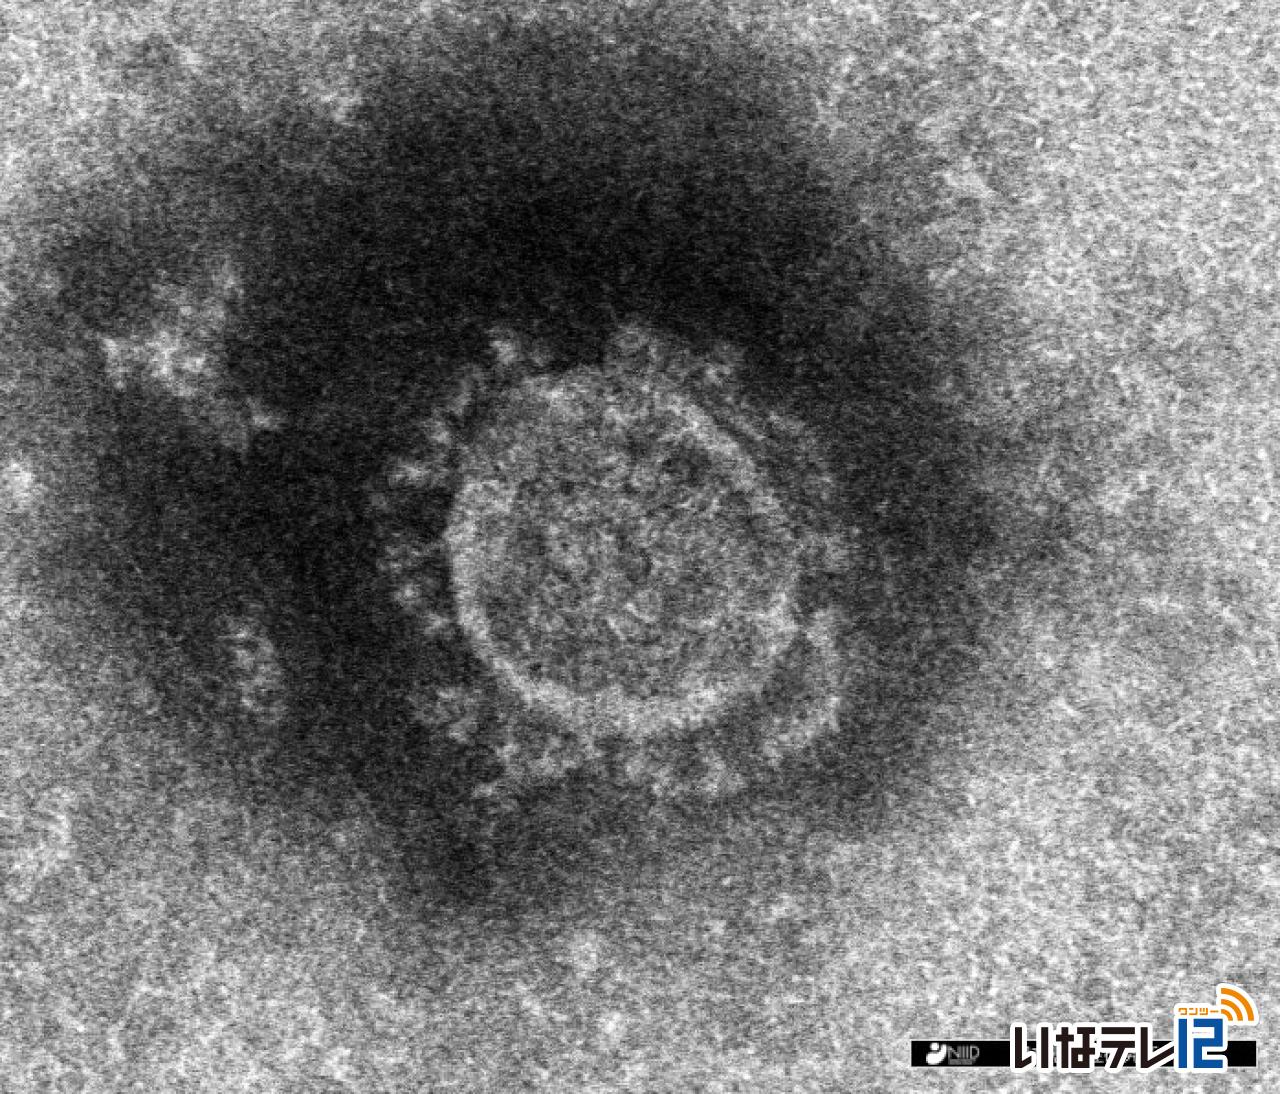 長野県内で新たに５人　新型コロナ感染確認